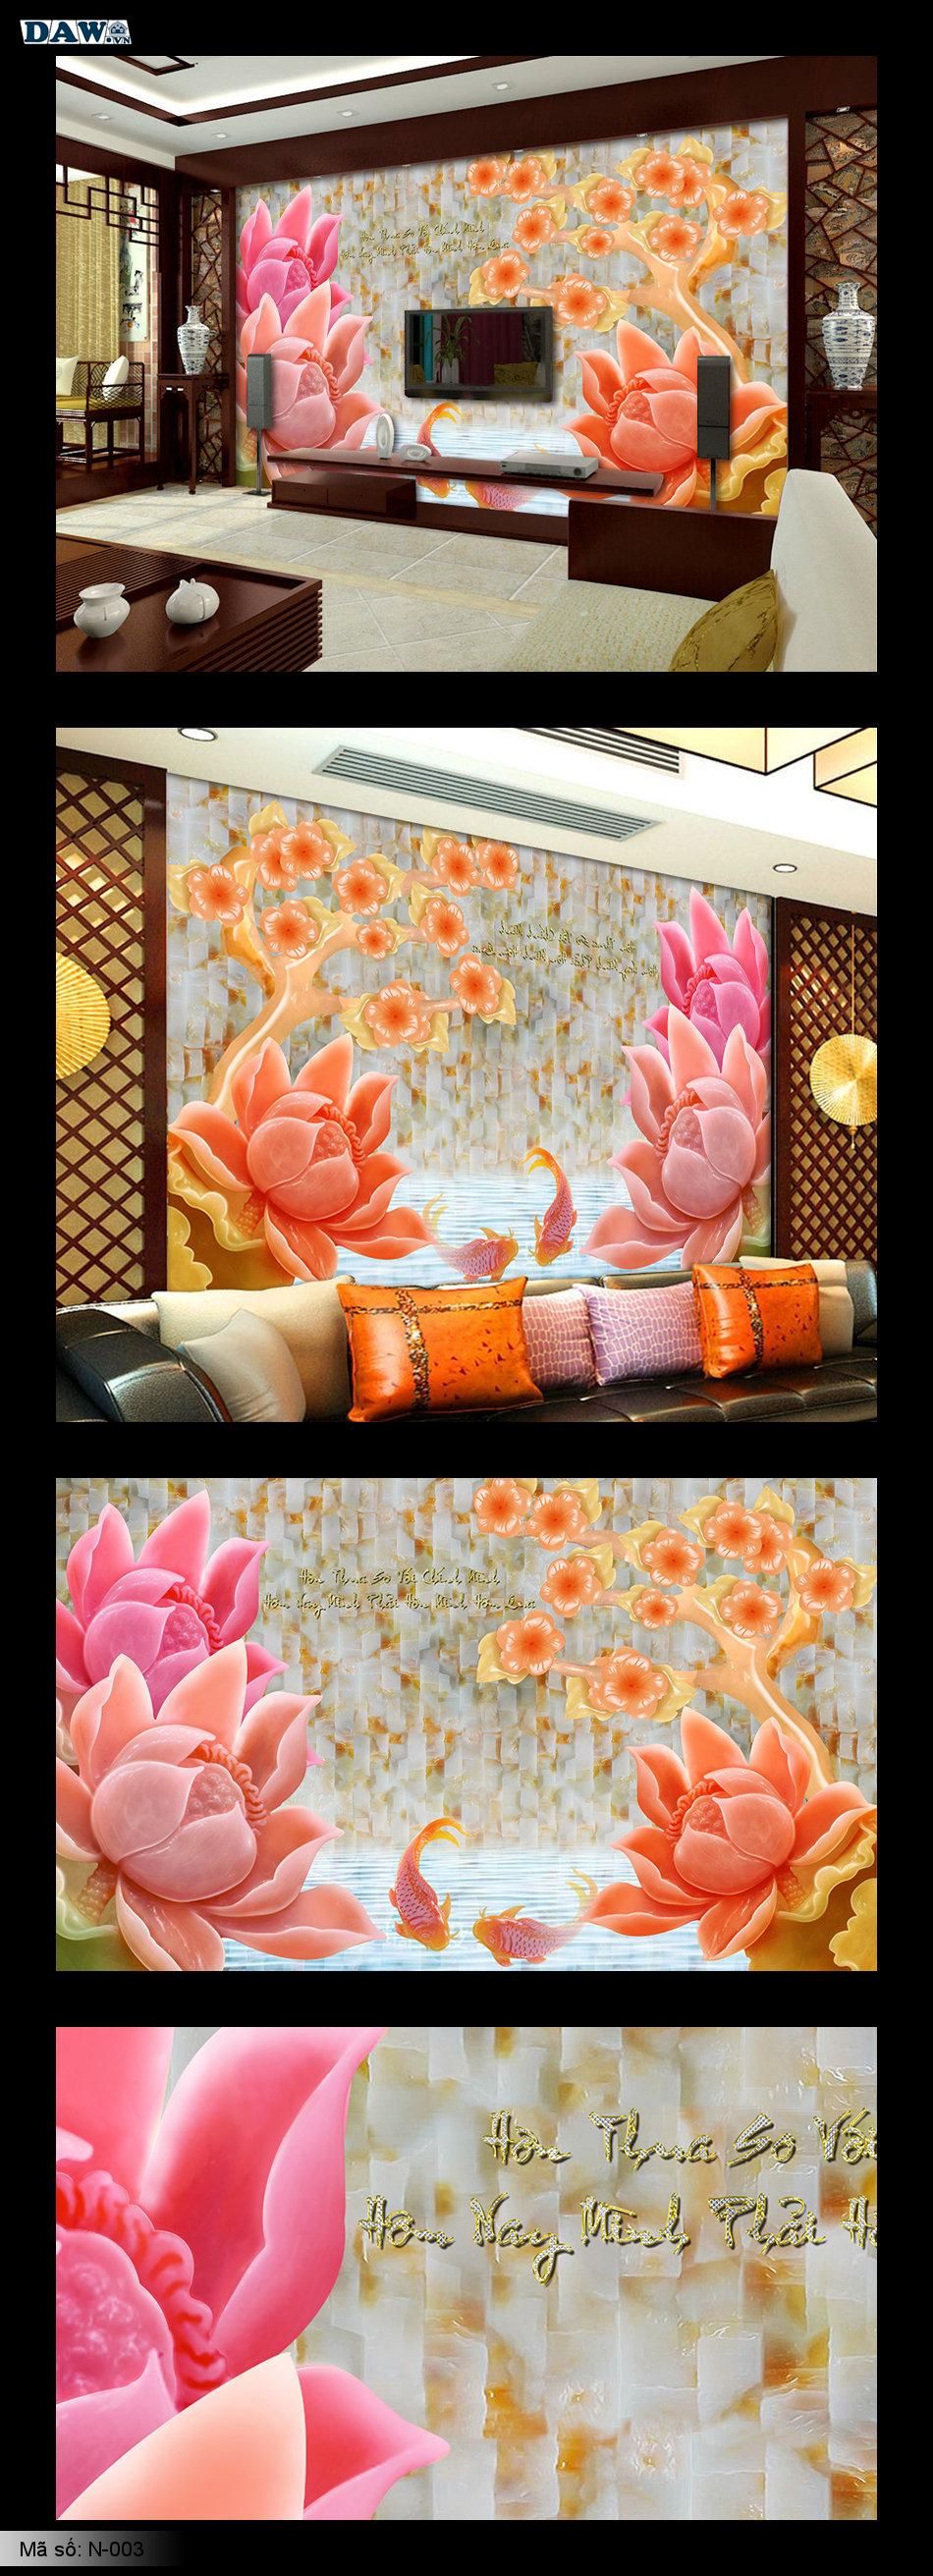 Tranh dán tường 3D, ngọc nổi, giả ngọc 3D, tranh ngọc màu hồng, màu đỏ, tranh hoa sen đẹp N-003 ​